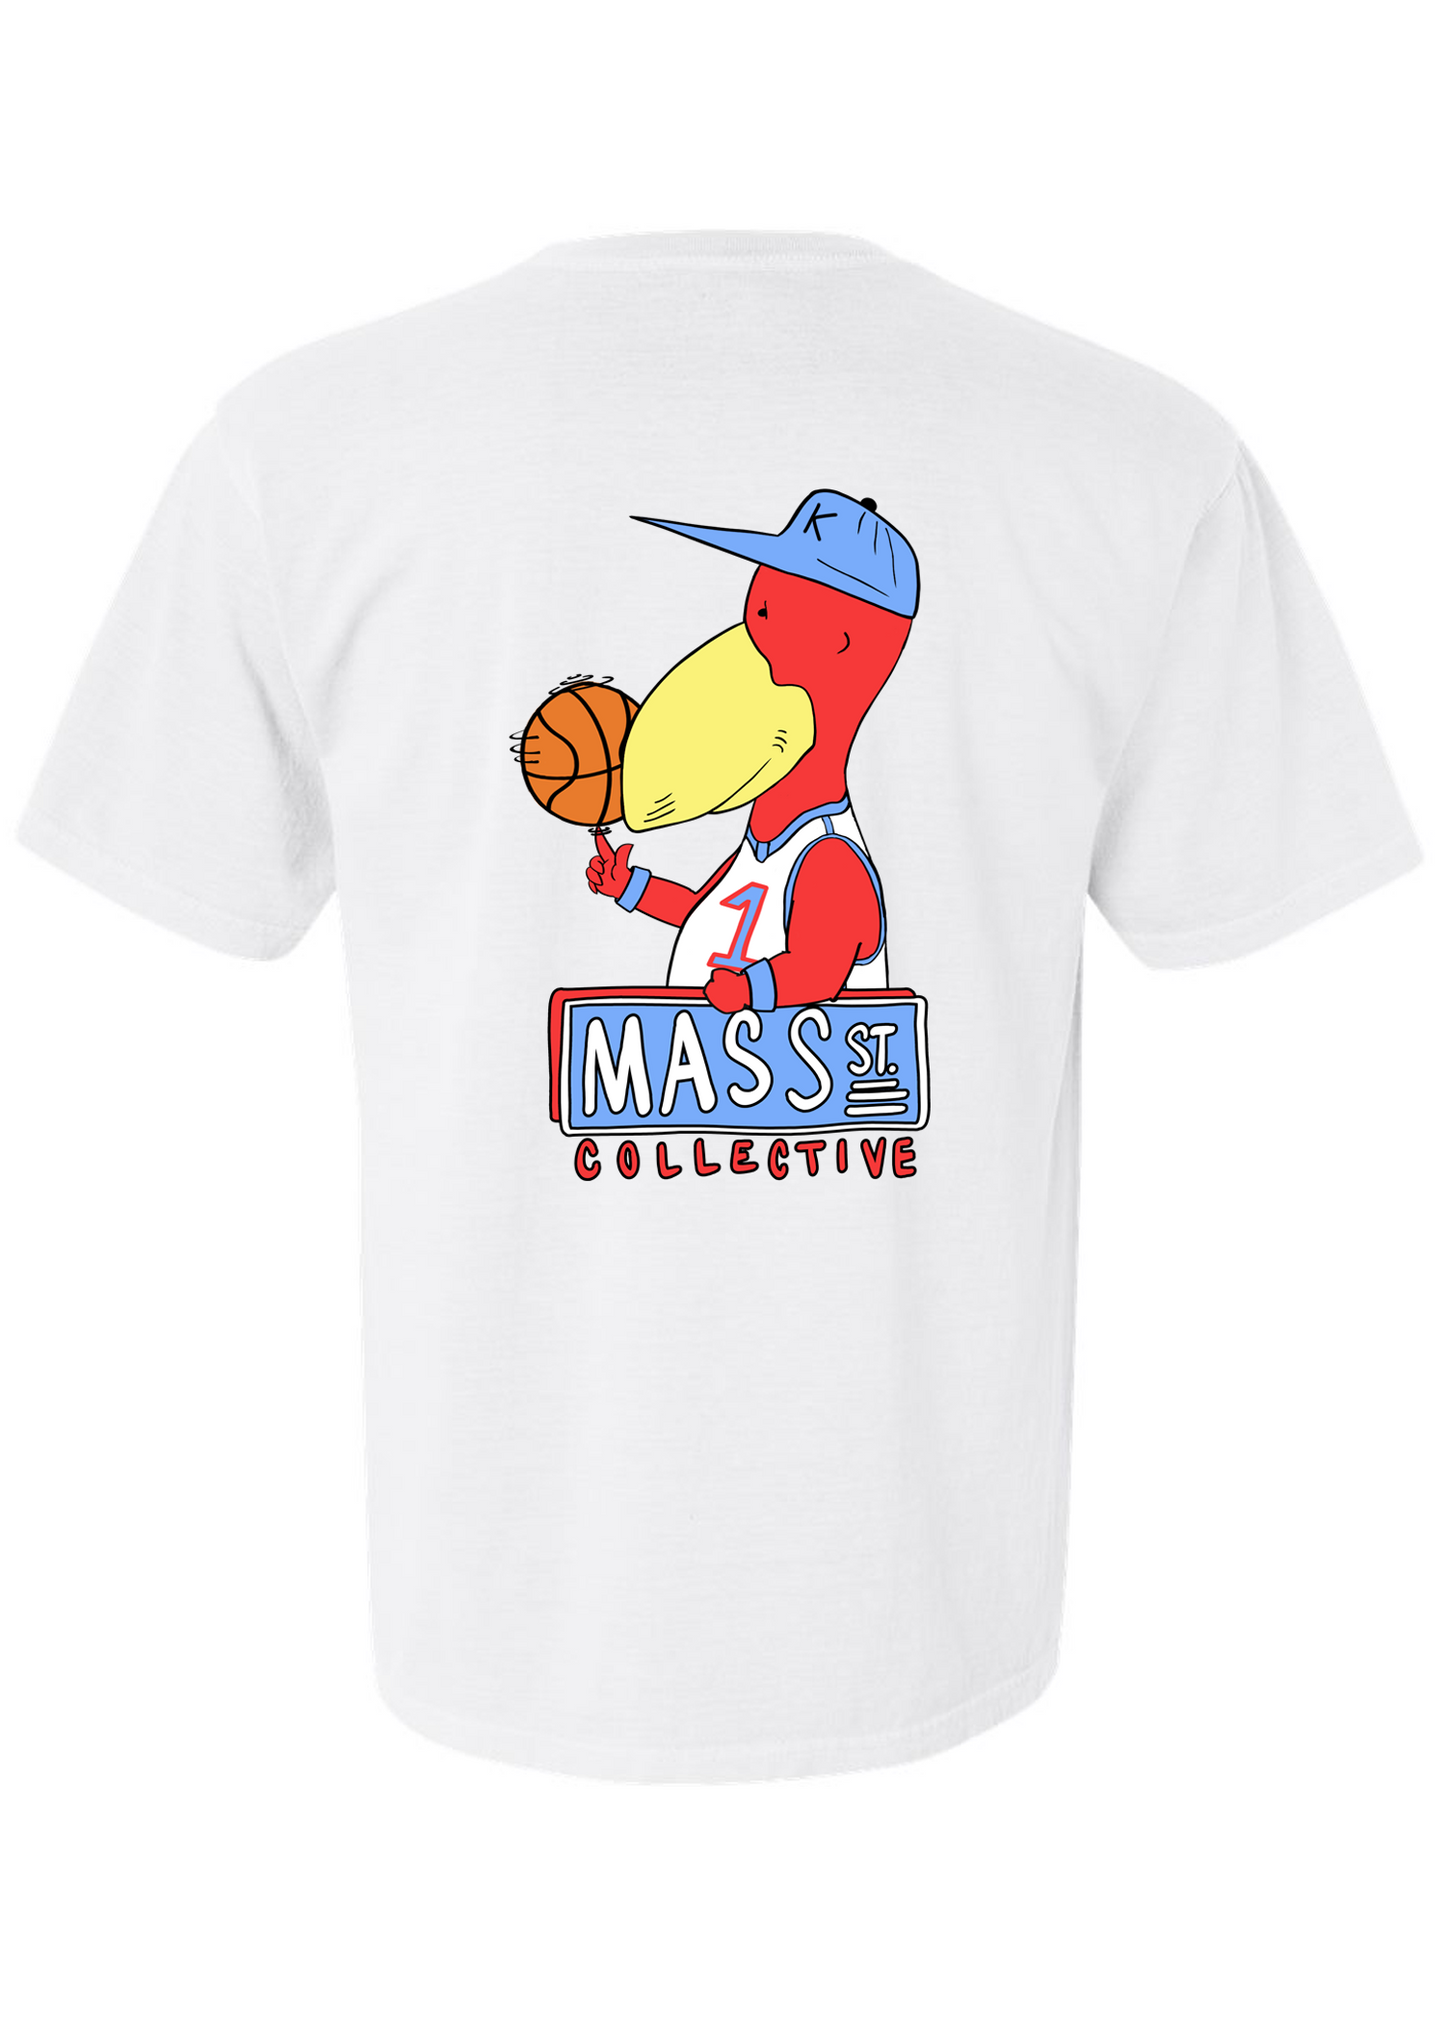 Mass St. Collective x Poppyhawk Basketball T-shirt